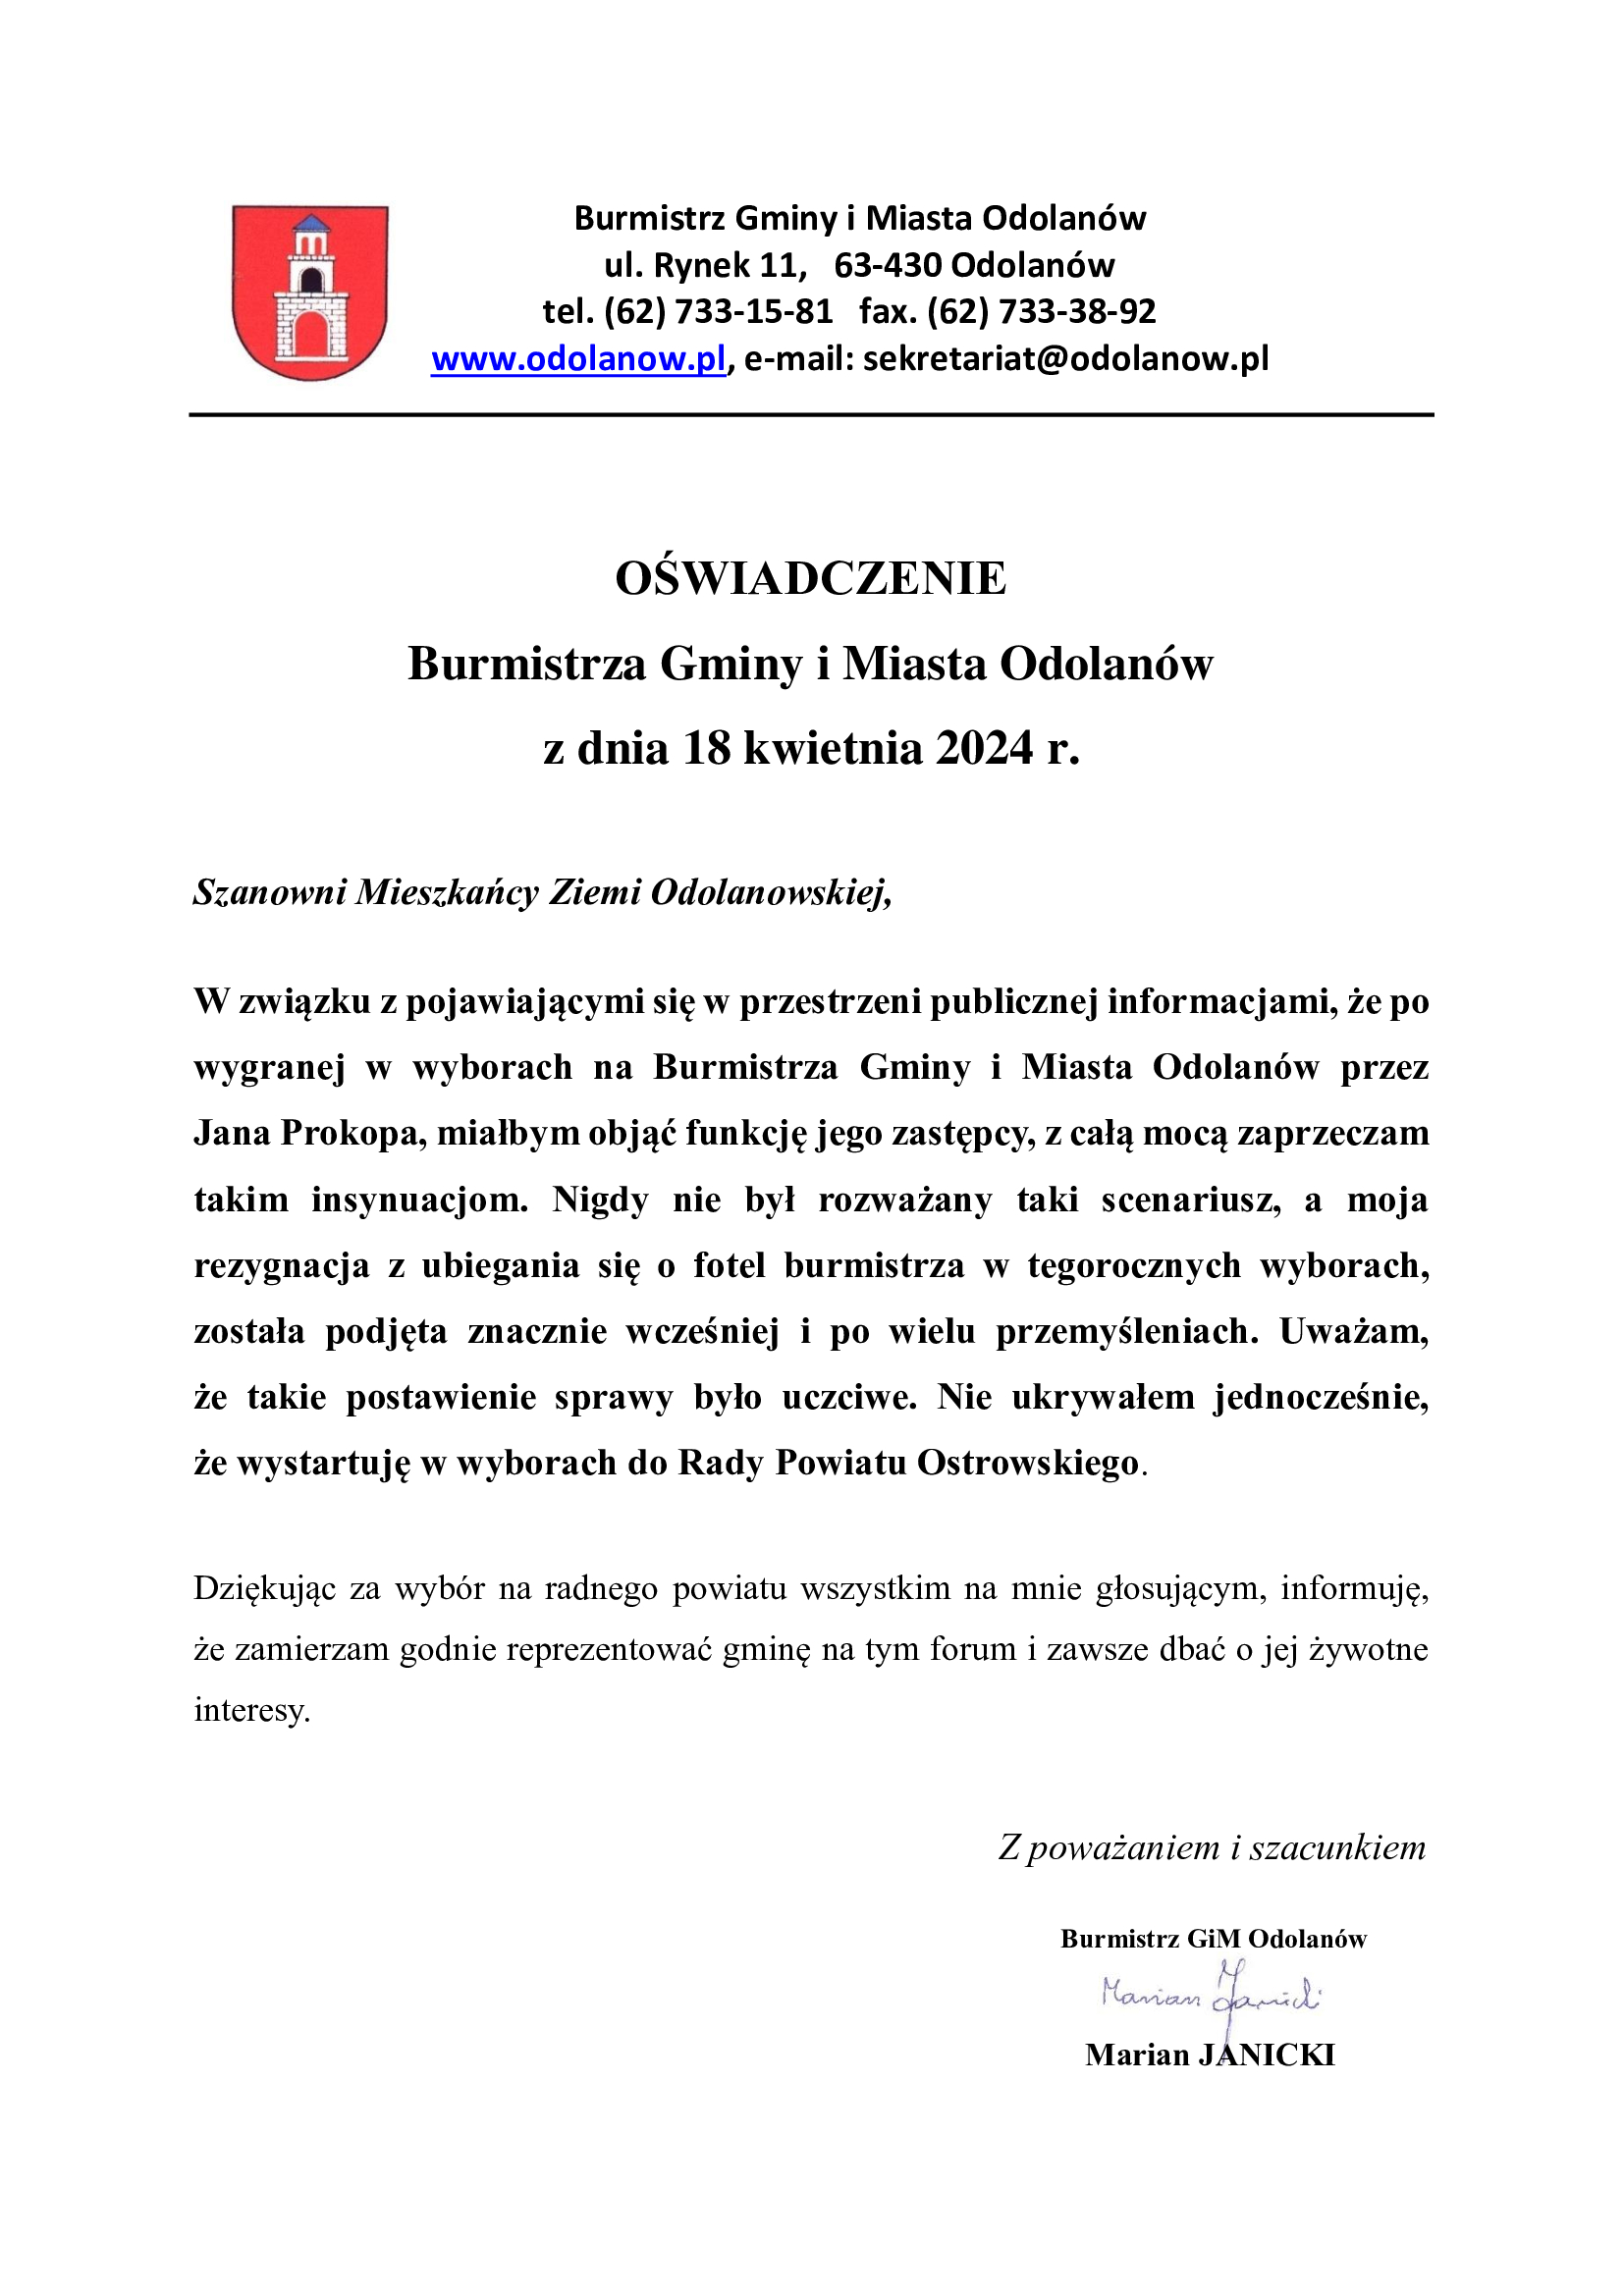 Oświadczenie Burmistrza Gminy i Miasta Odolanów z dnia 18 kwietnia 2024 r.